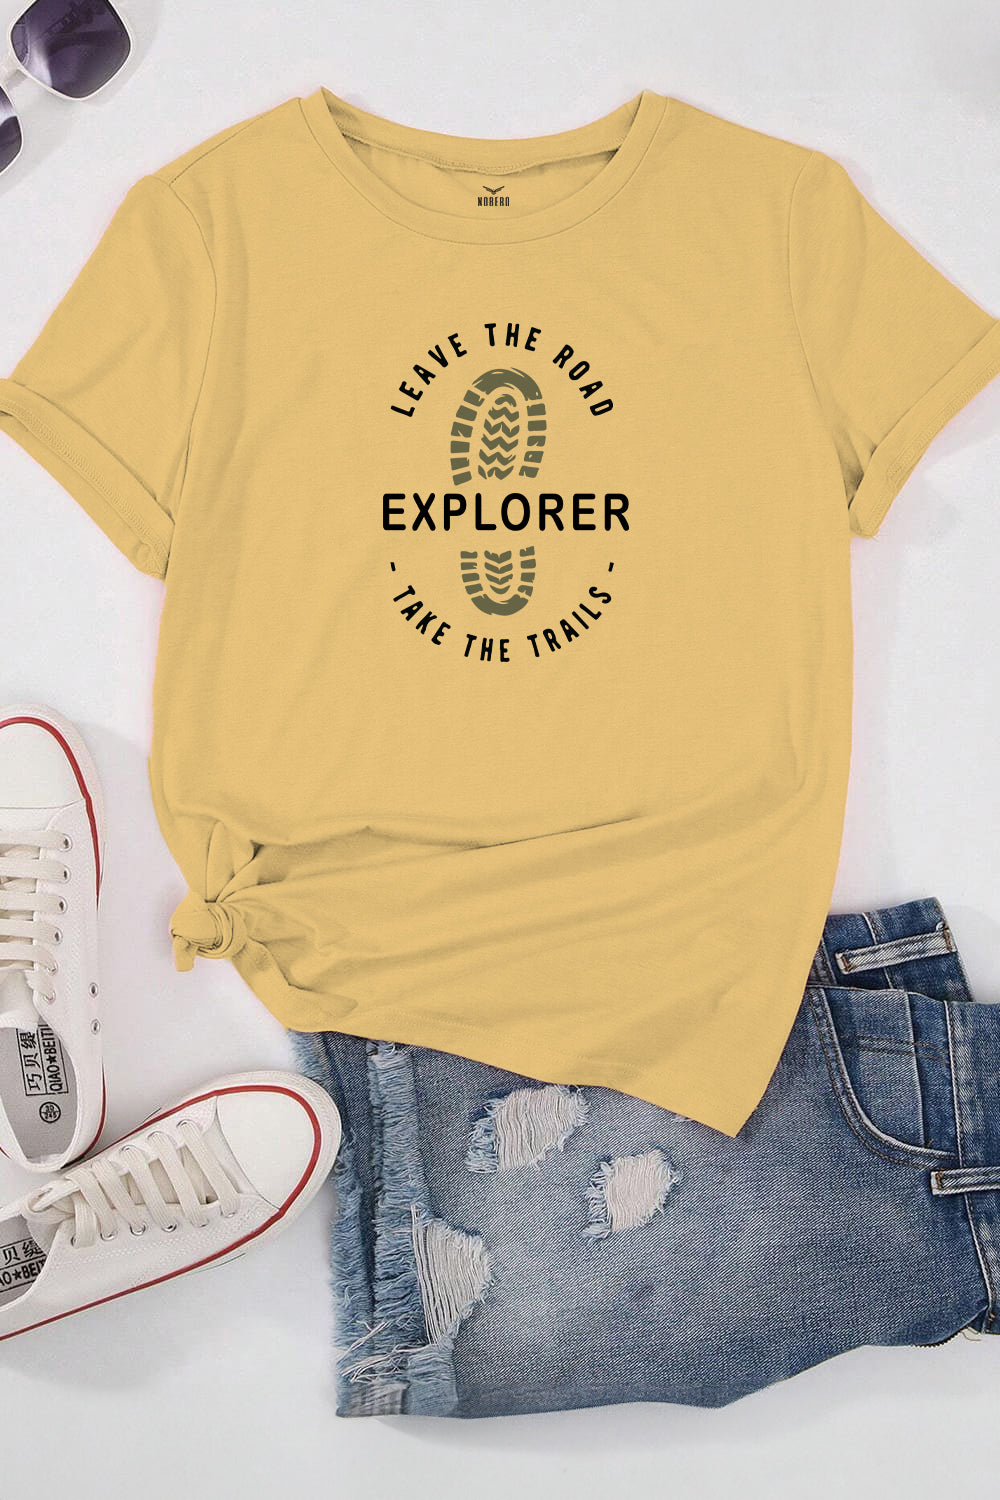 Boyfriend Trails Explorer Classic Fit T-Shirt